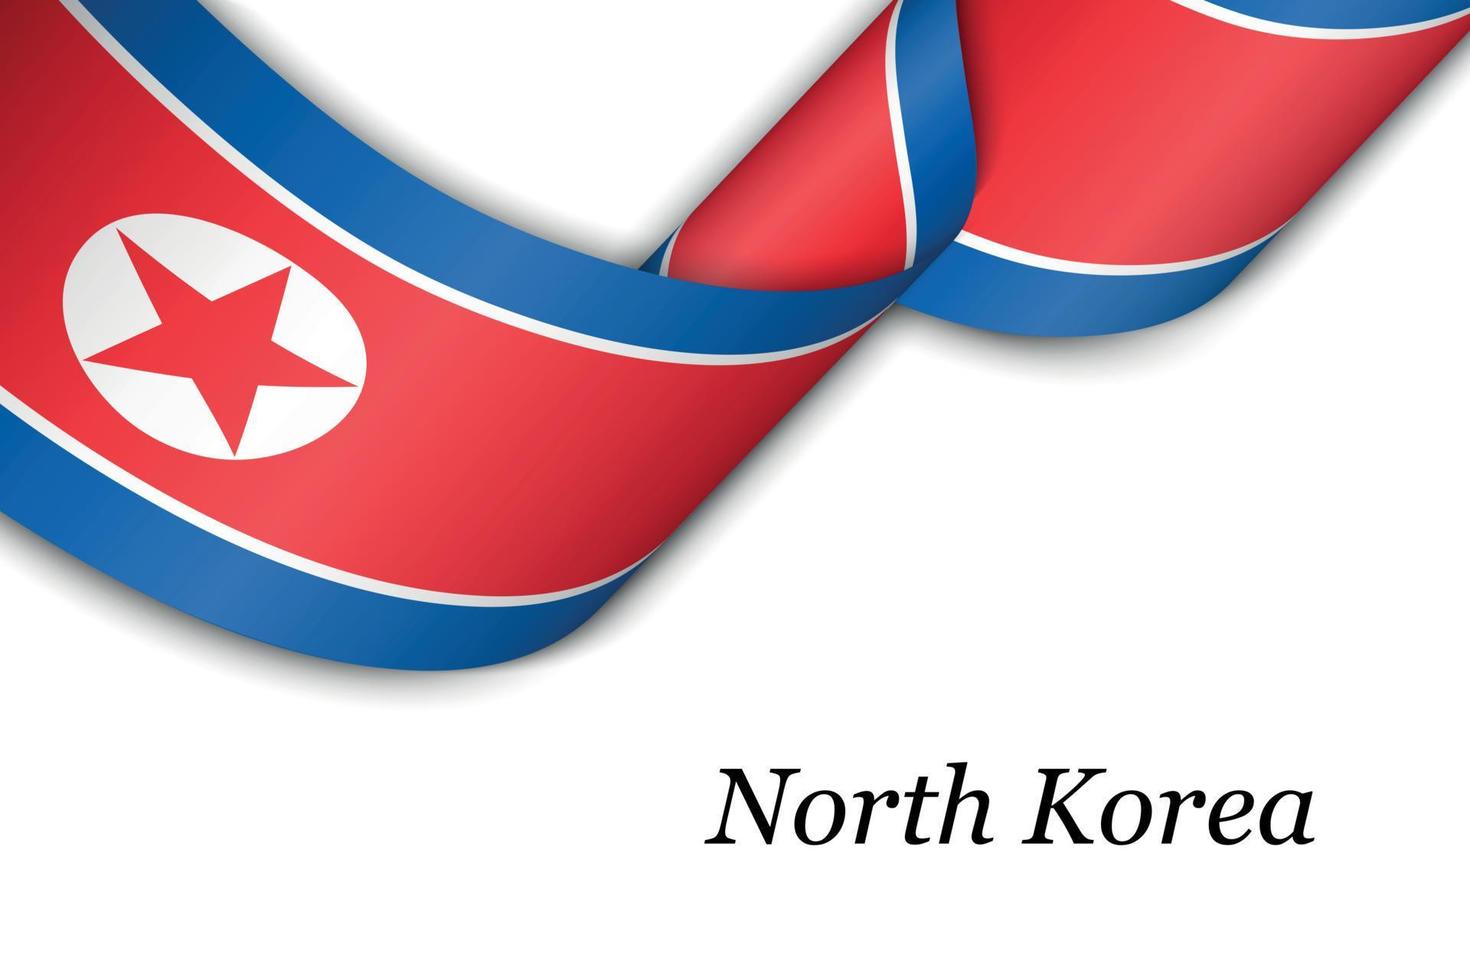 sventolando il nastro o lo striscione con la bandiera della corea del nord vettore